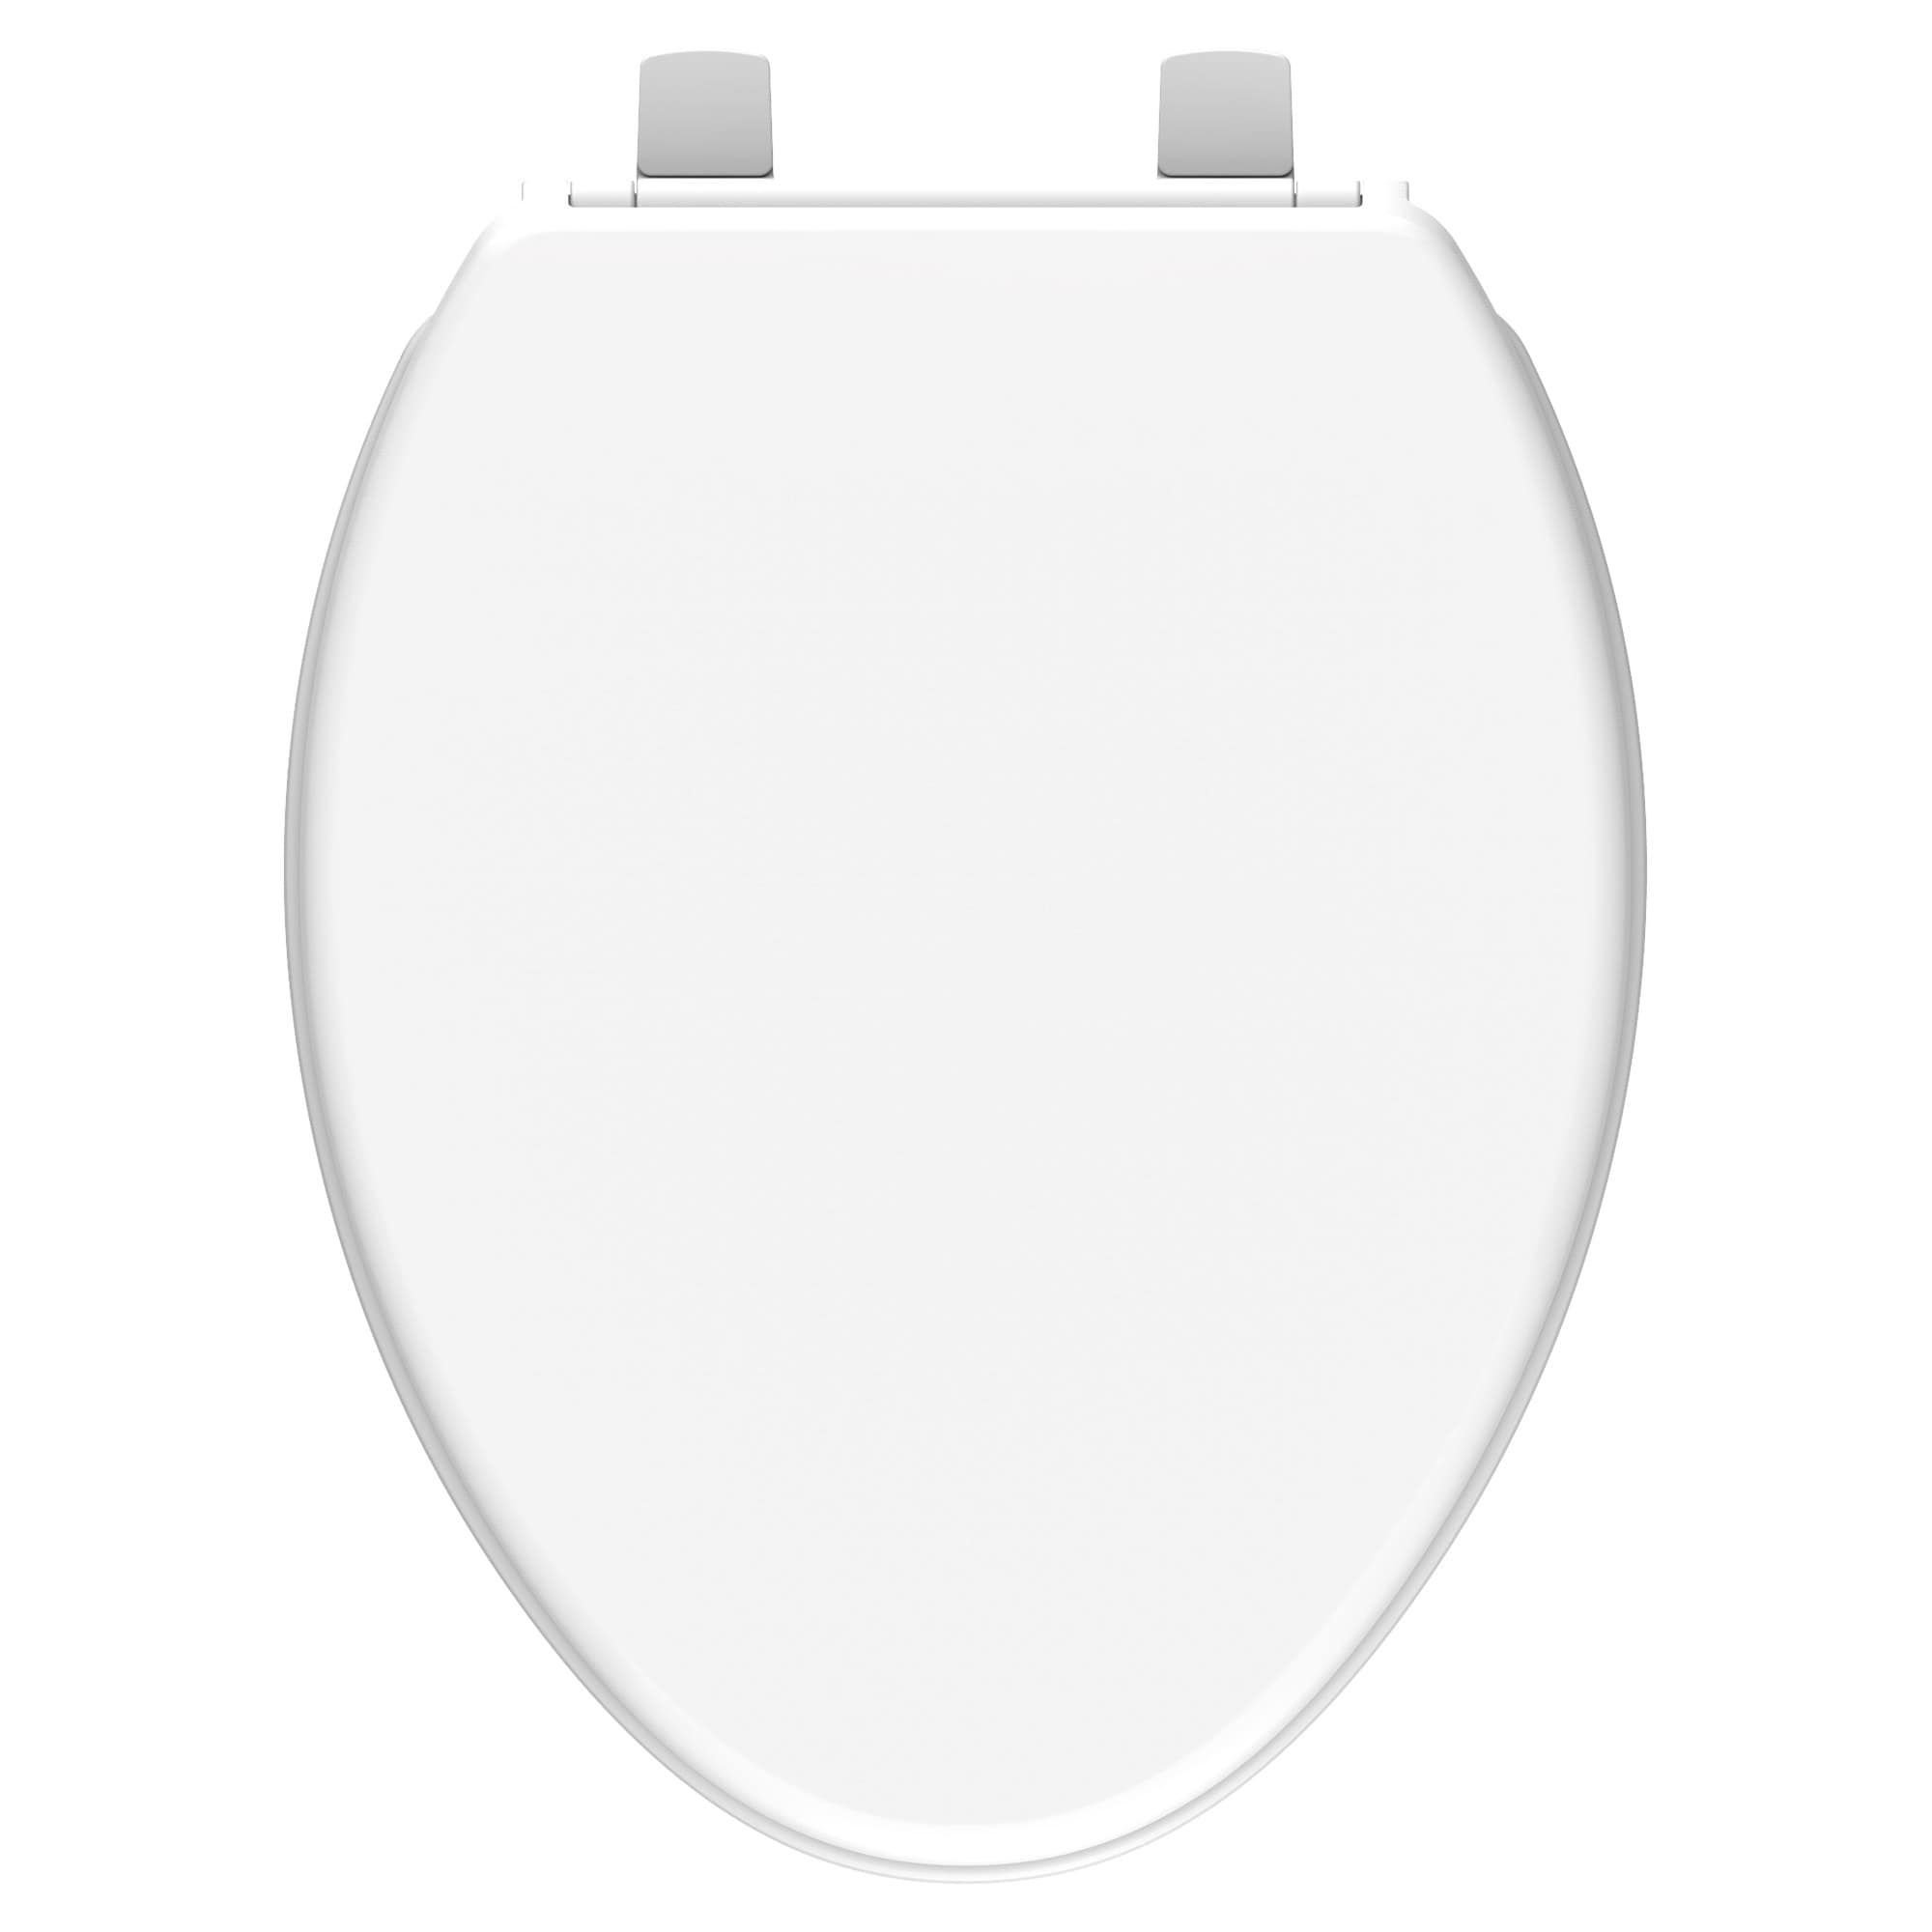 Galactika LED-lighted toilet seat  Cool toilets, Toilet design, Toilet seat